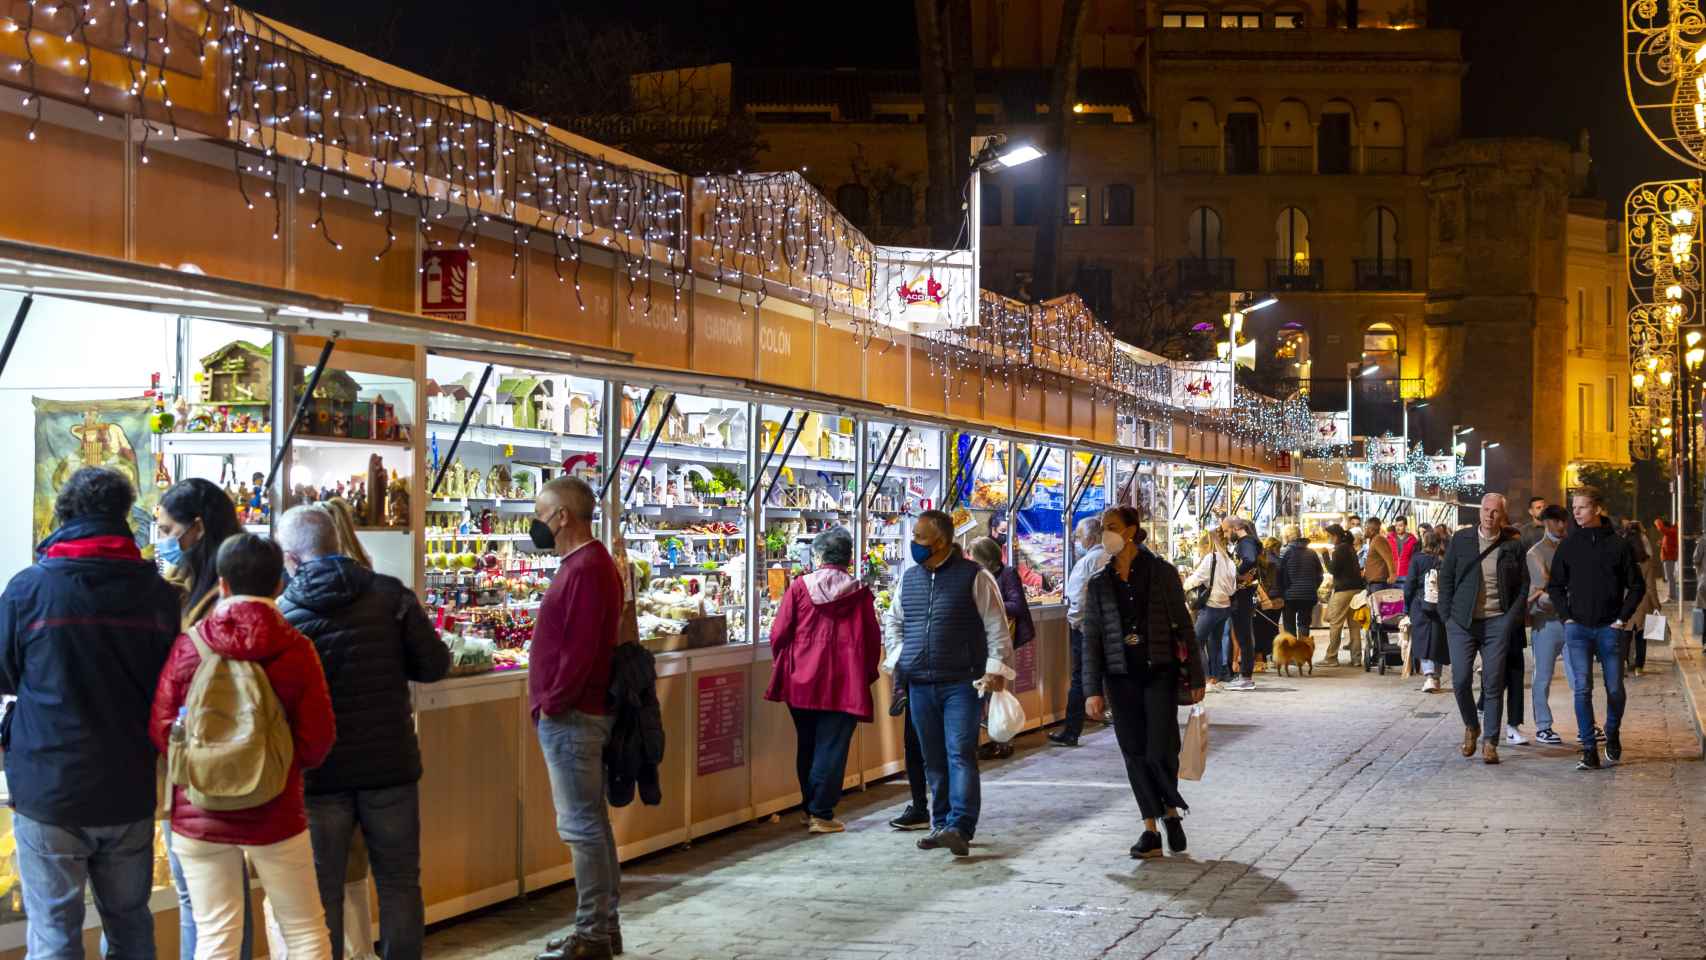 Turistas y españoles locales visitan un puesto de mercado navideño cerca de la catedral en una noche de invierno en el centro histórico de Sevilla, España.